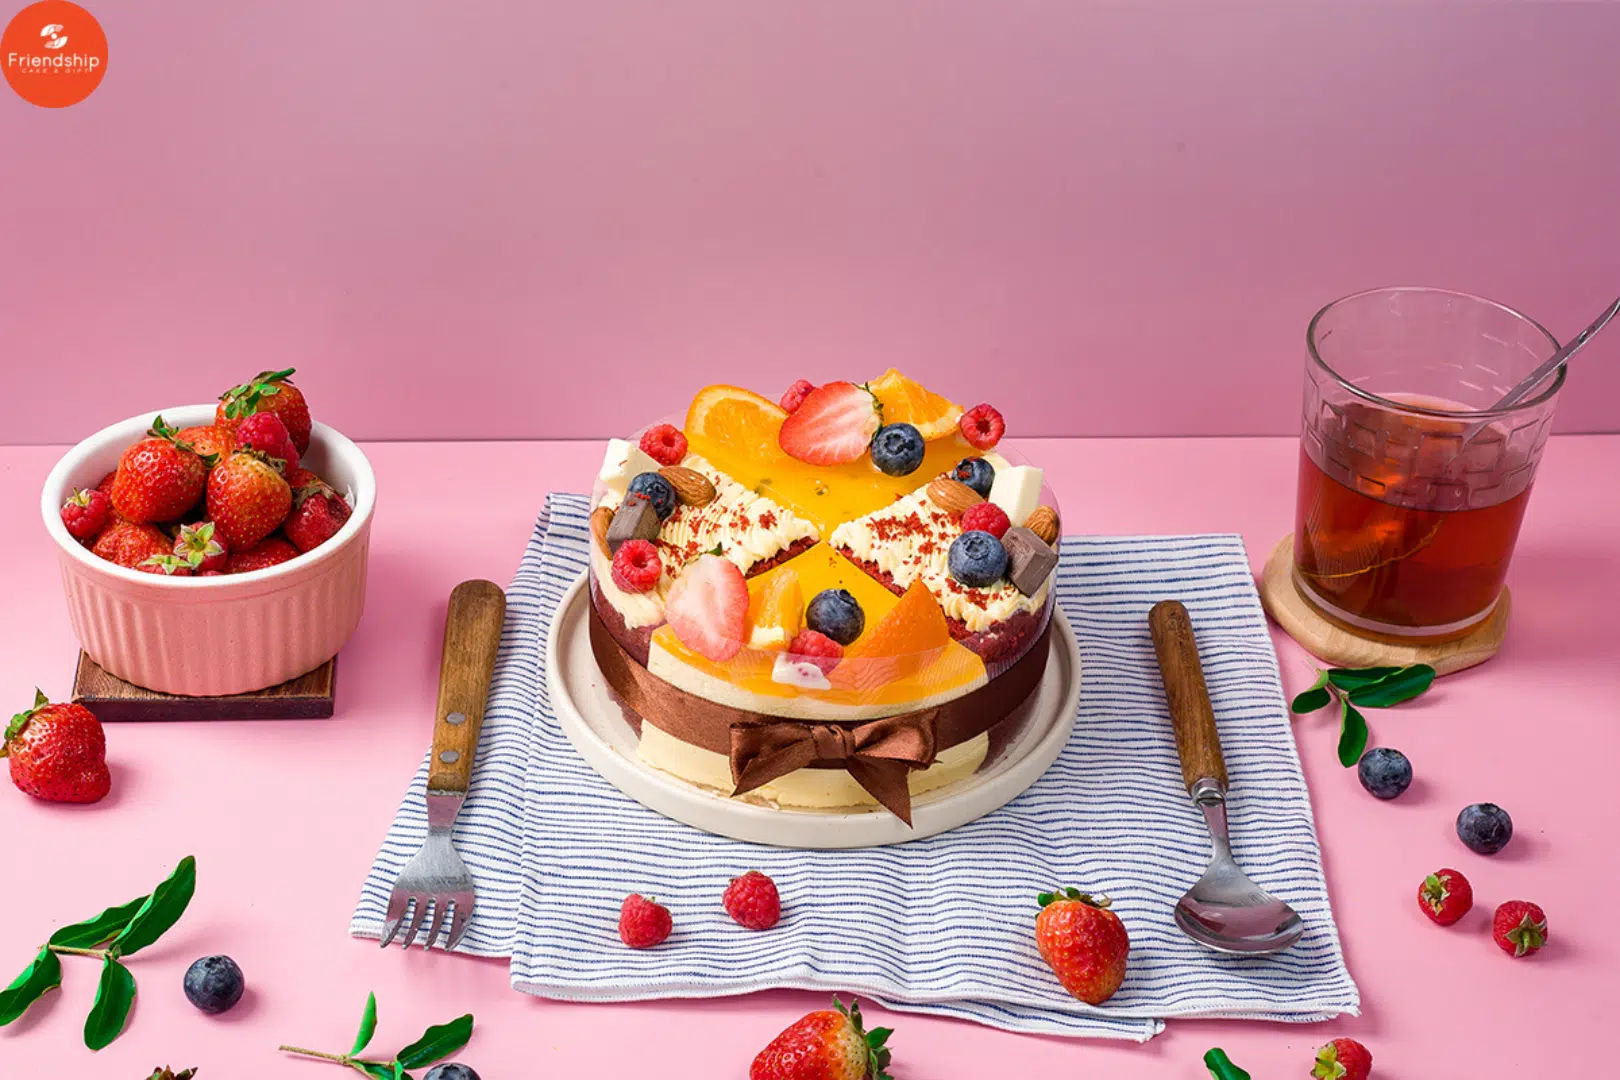 Câu chuyện hạnh phúc từ mẫu bánh sinh nhật hiện đại của Friendship Cake & Gift